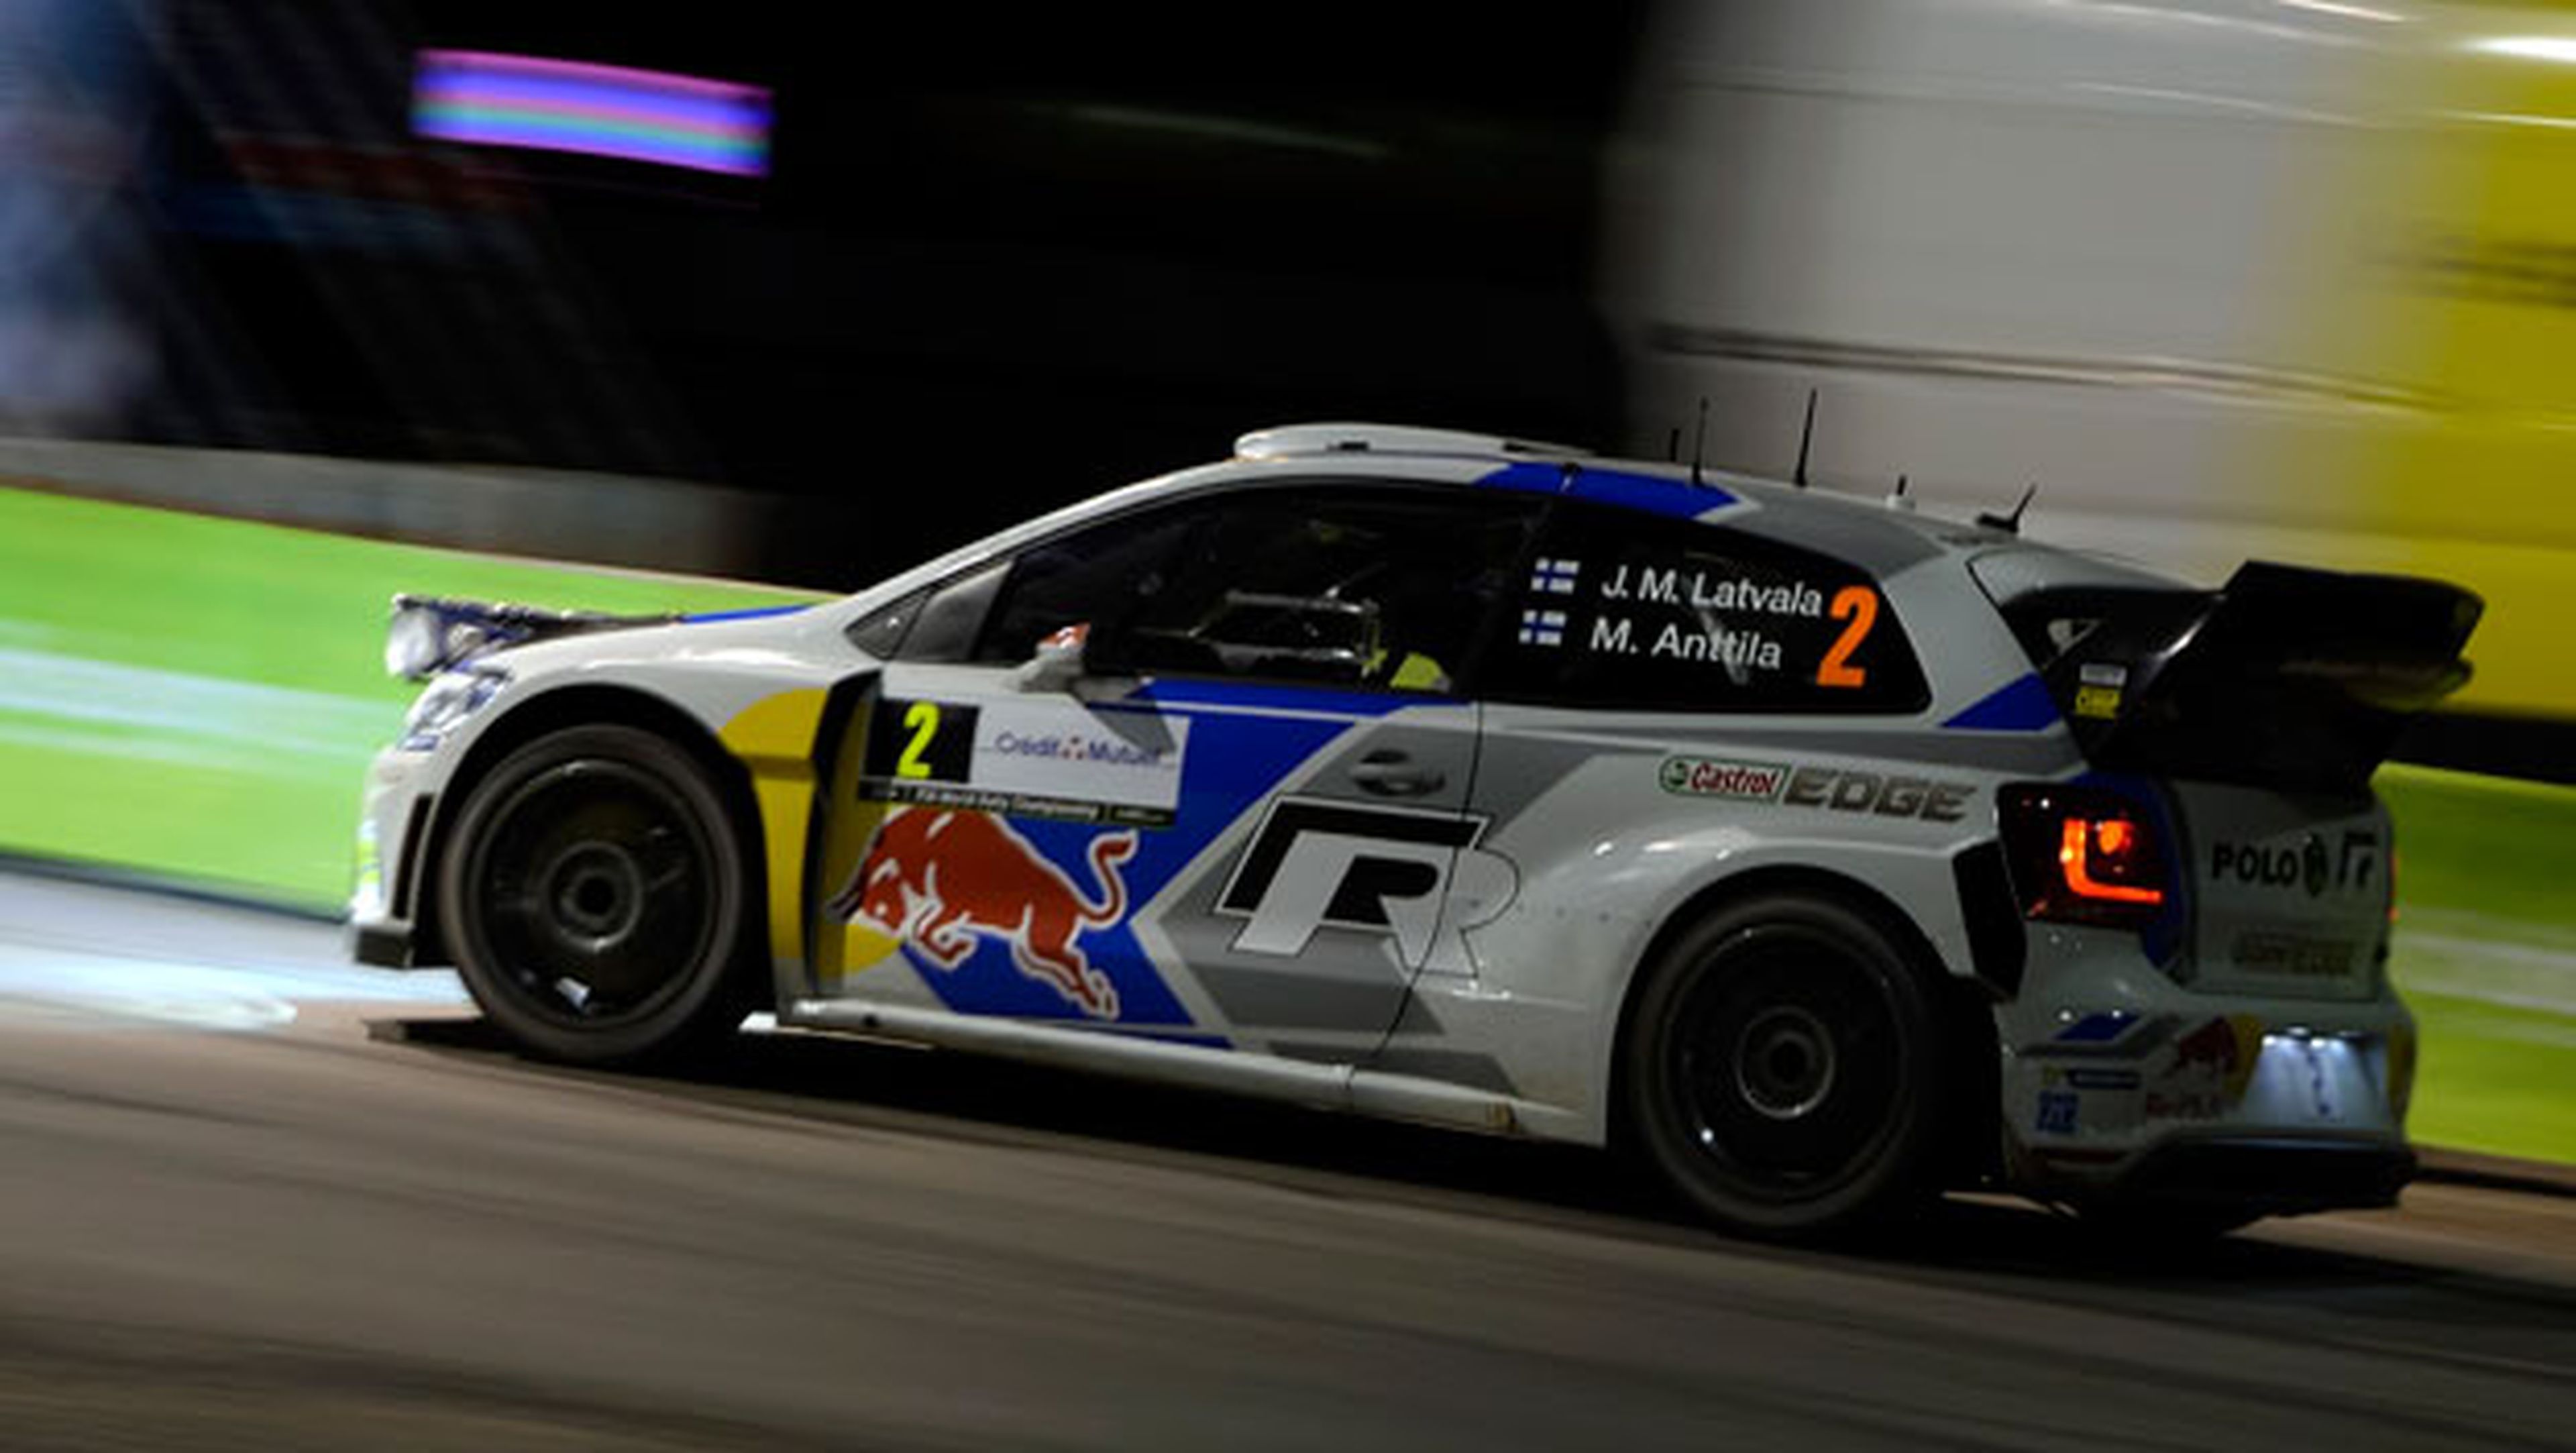 WRC, Rally de Francia 2014: Latvala se estrena en asfalto